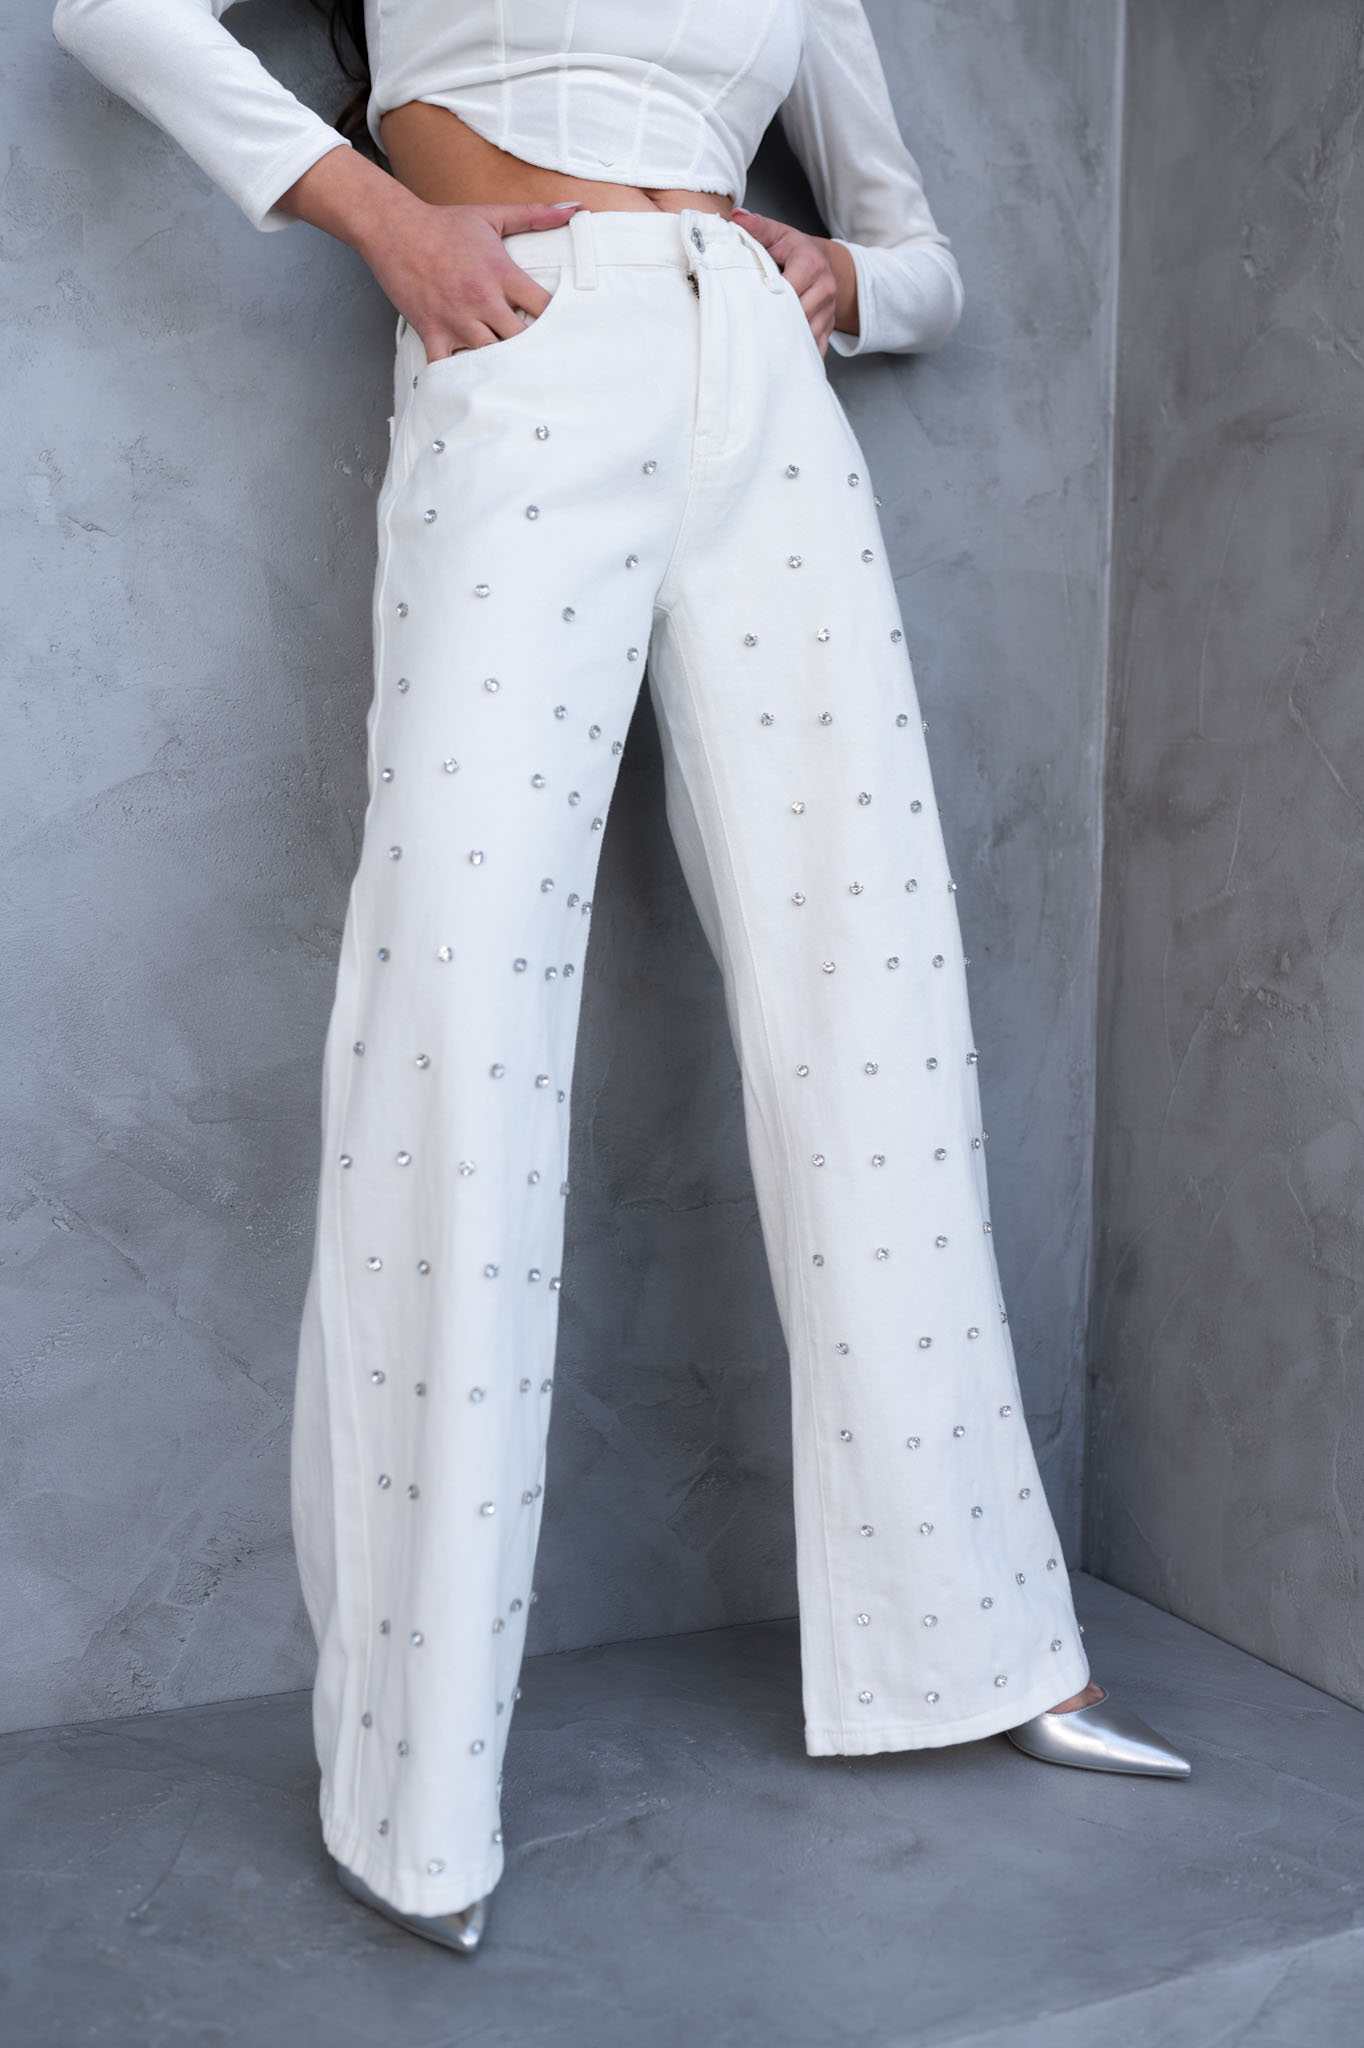 ΓΥΝΑΙΚΕΙΑ ΡΟΥΧΑ Rocket τζιν παντελόνι με τρουκς strass λευκό